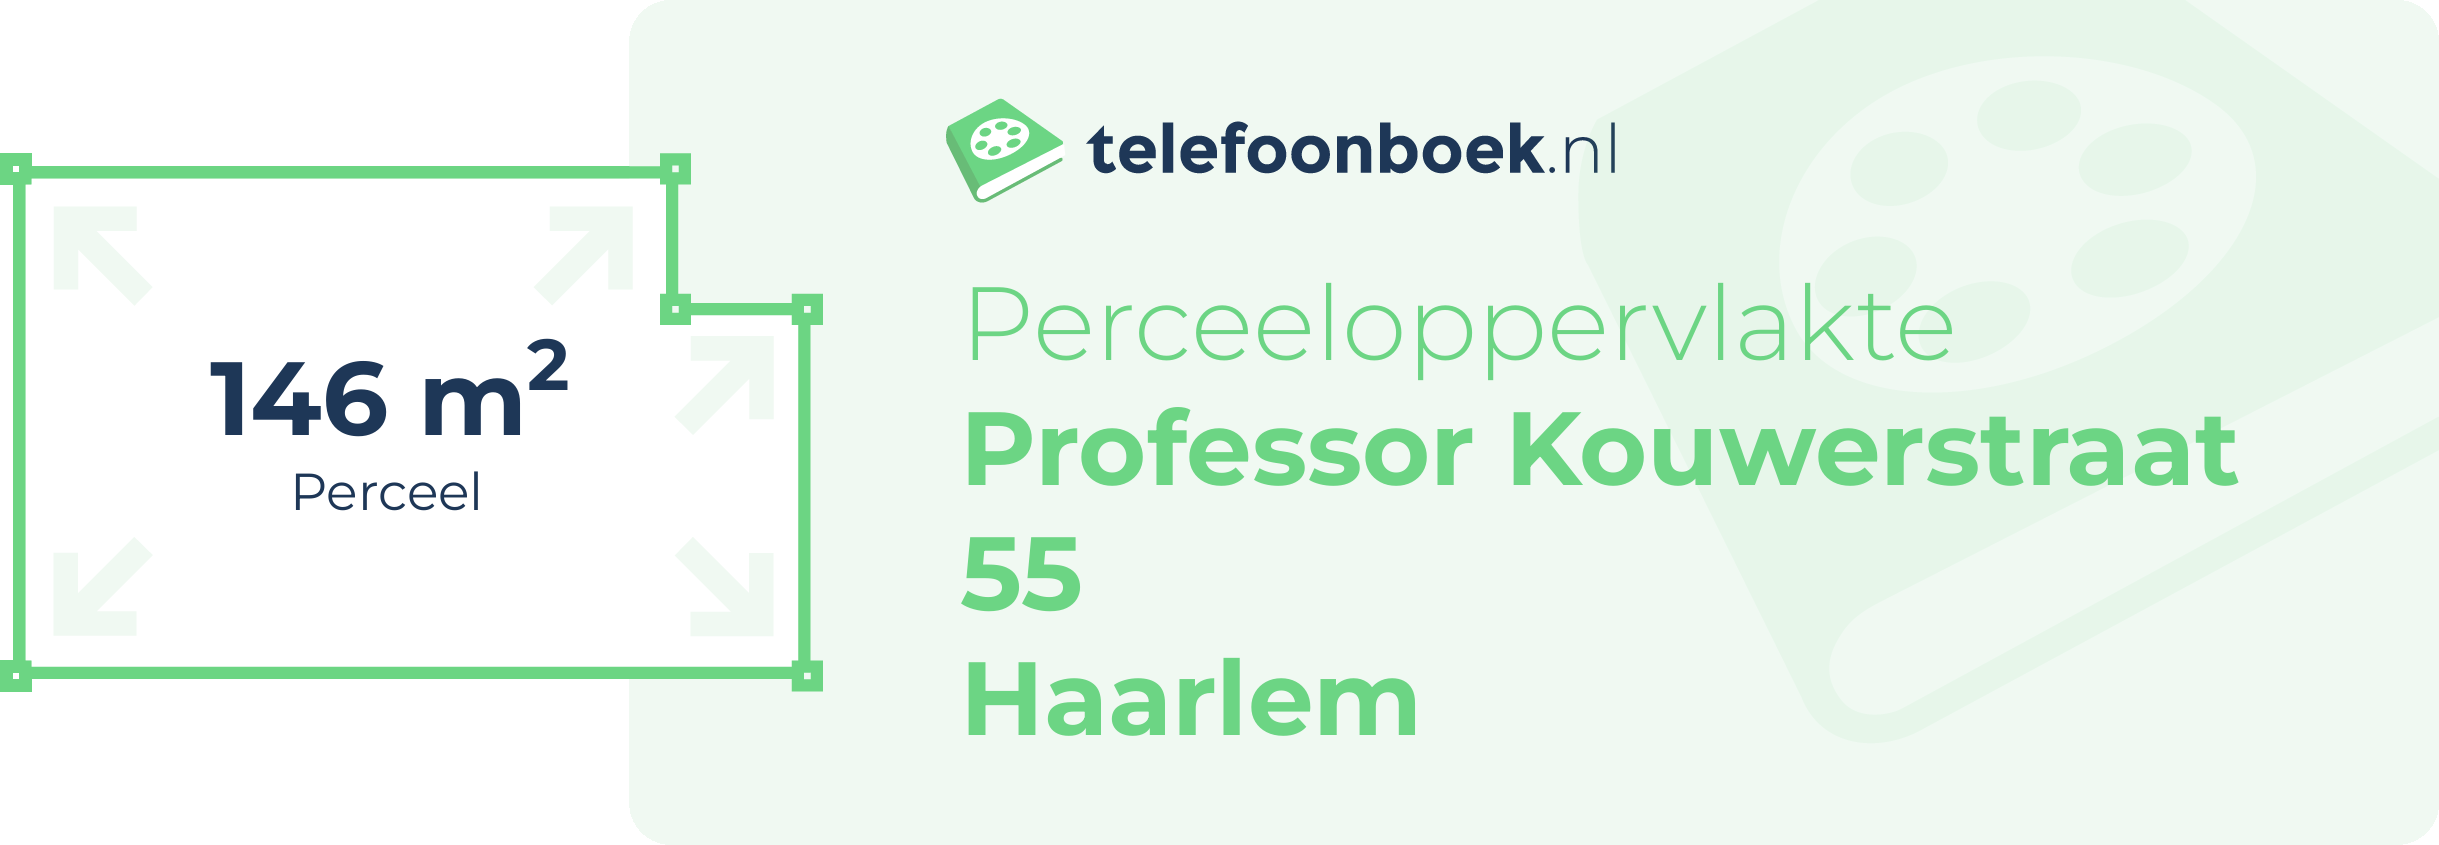 Perceeloppervlakte Professor Kouwerstraat 55 Haarlem